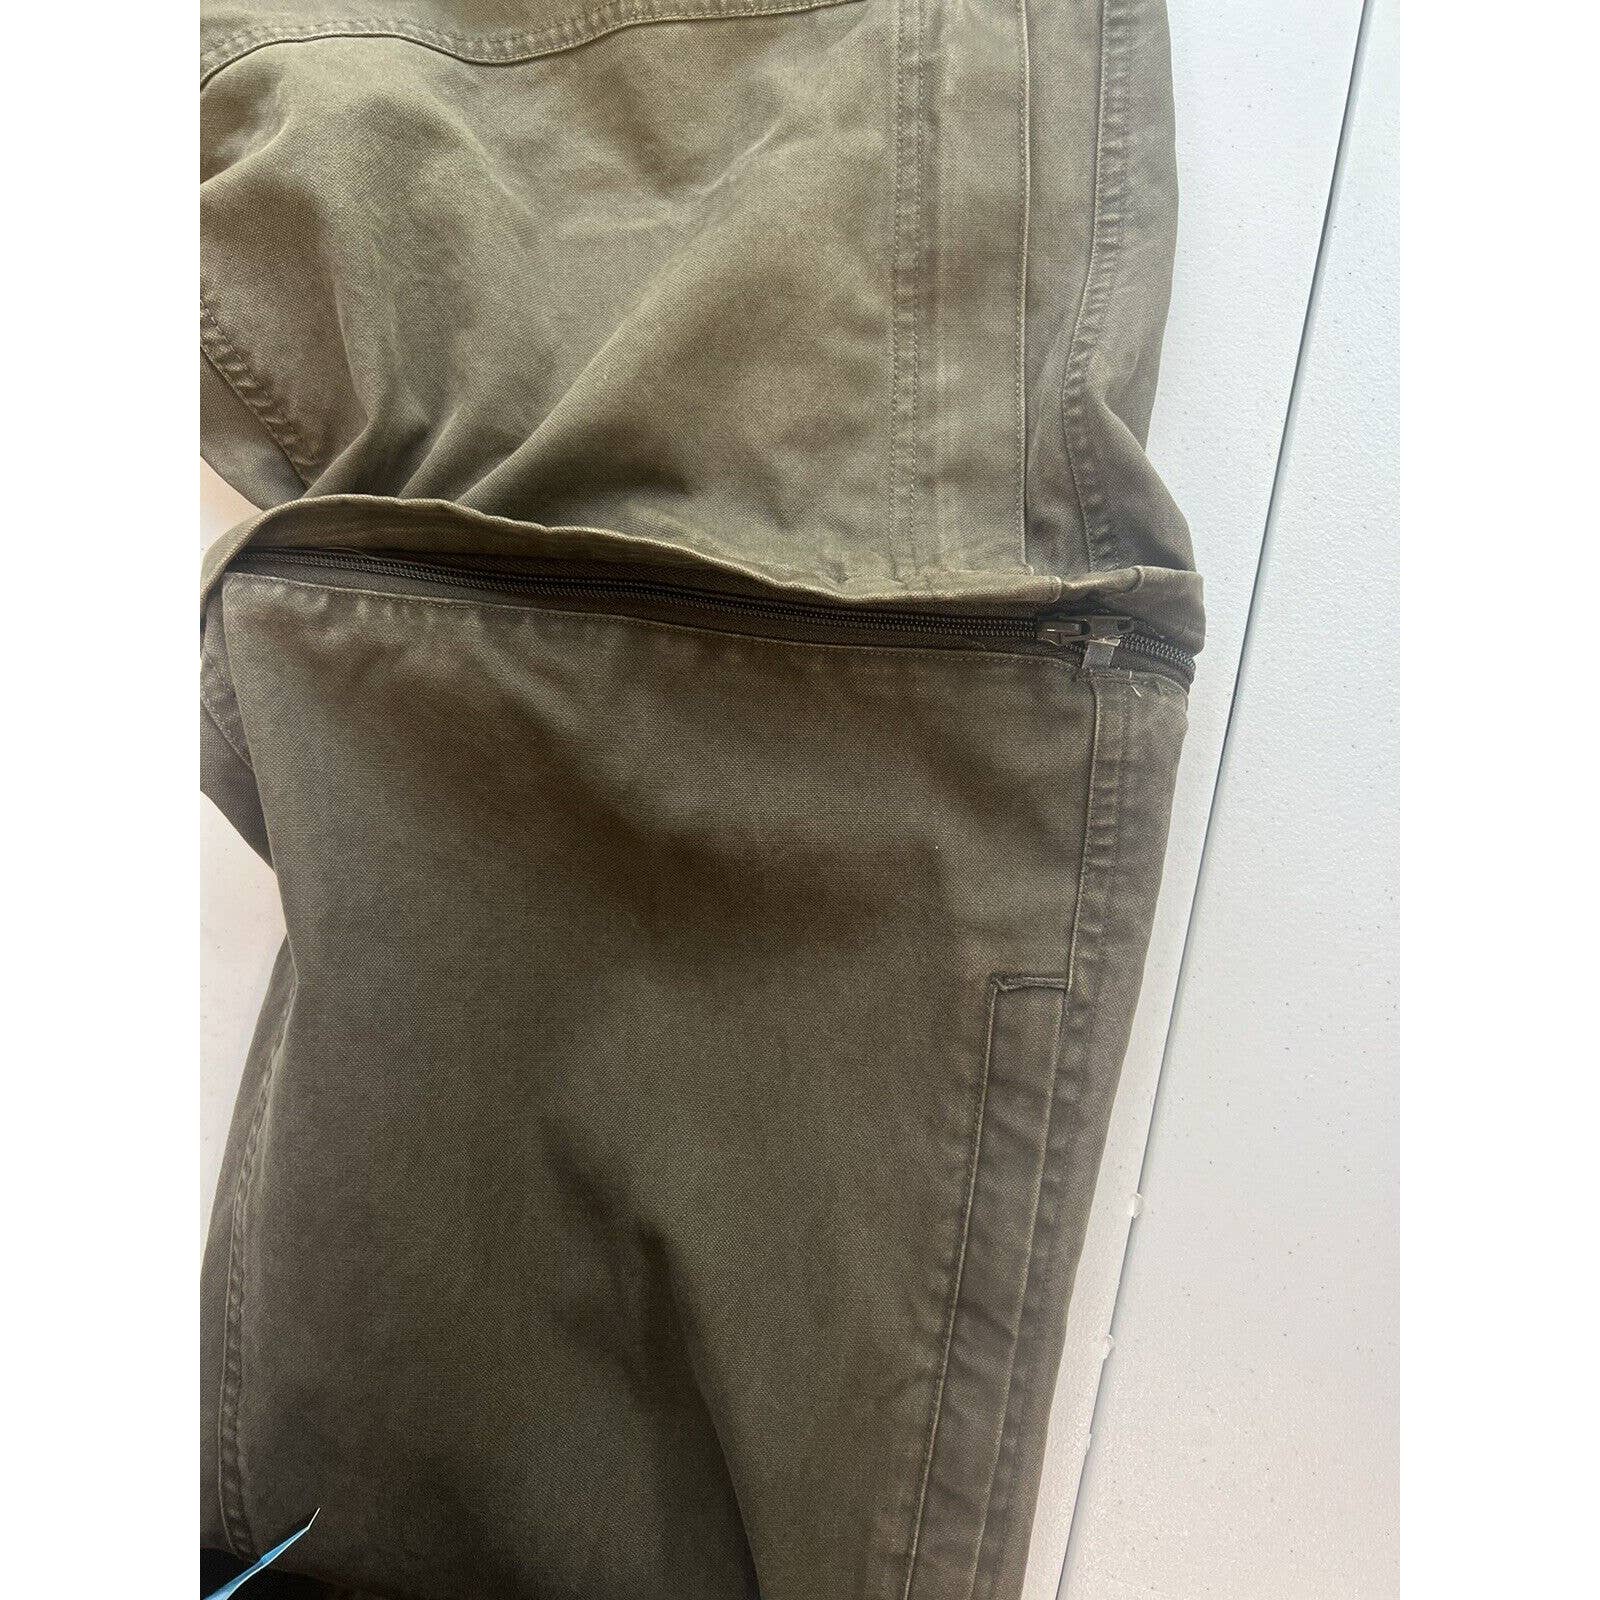 Sorel Zip Off Convertible Pants Men’s 34x30 Ripstop Heavy Workwear Hiking Green